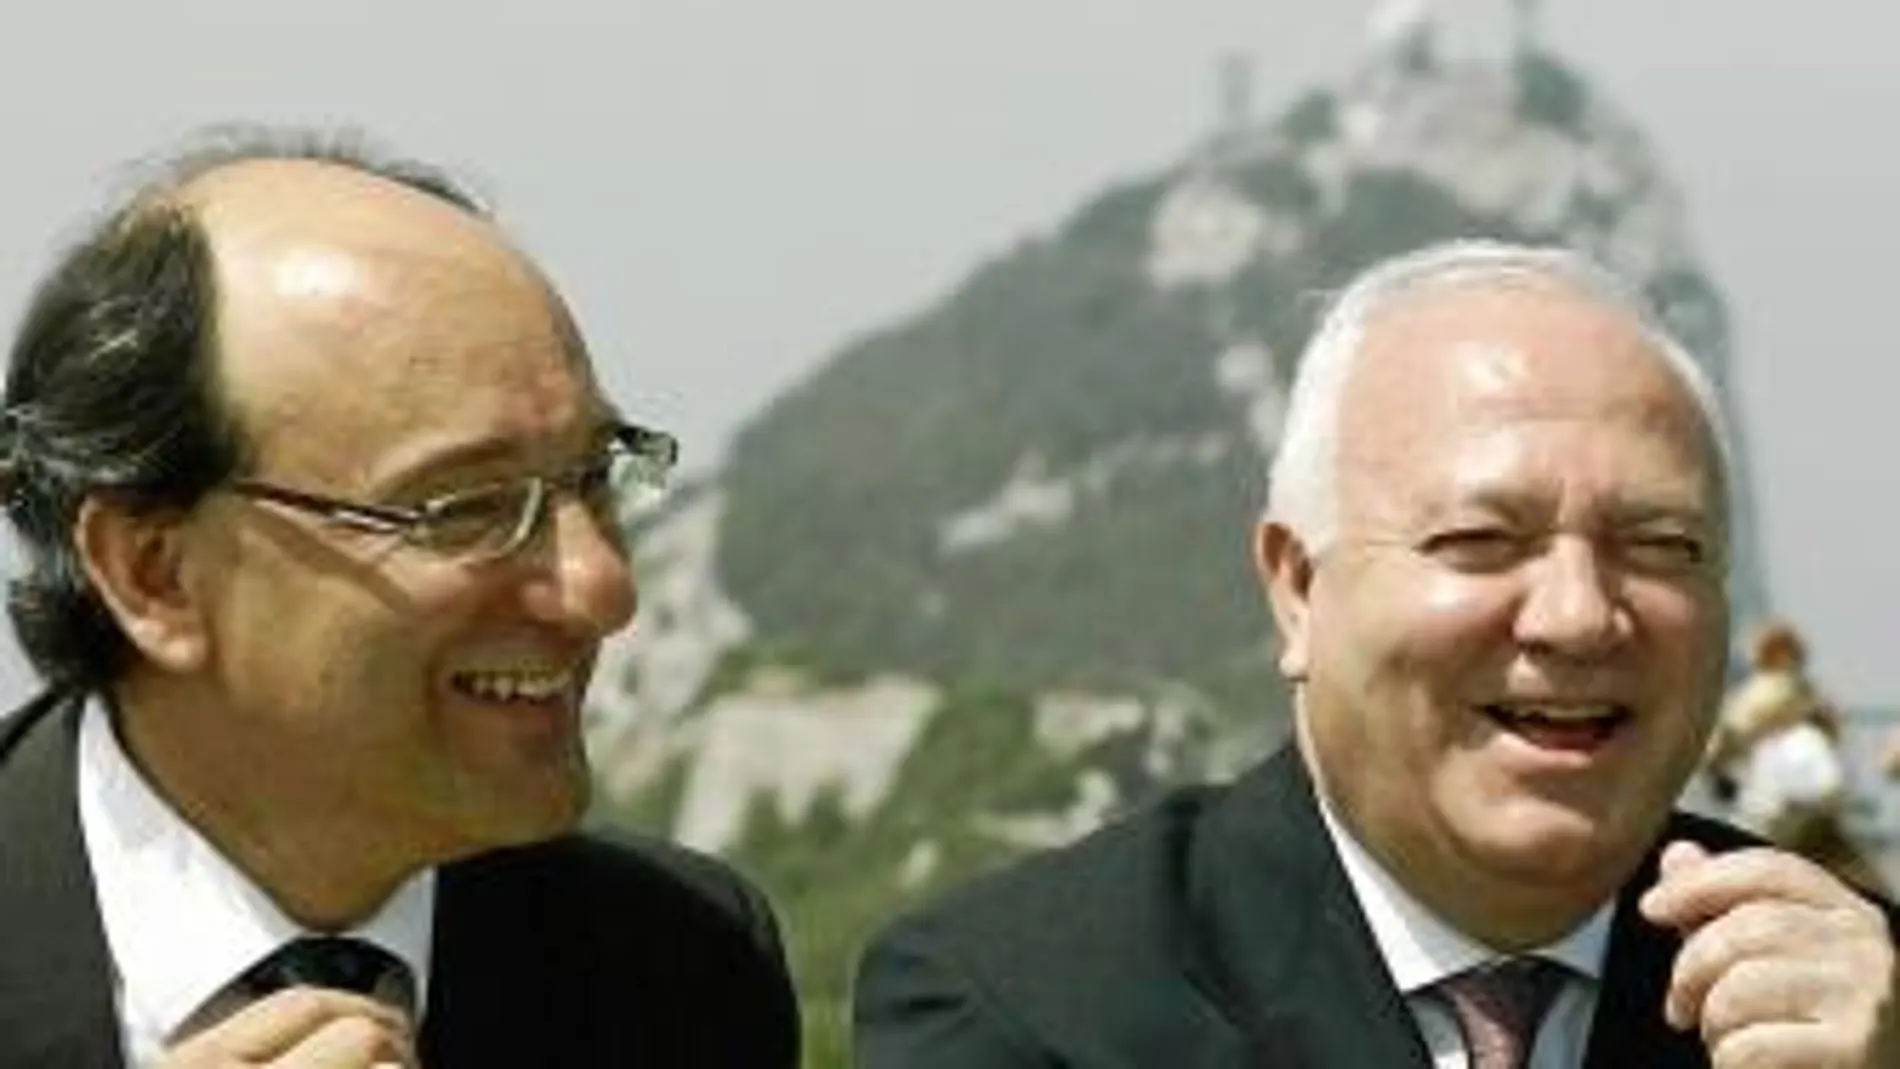 La visita de Moratinos a Gibraltar el pasado verano levantó ampollas. La foto con Caruana en El Peñón parece muy lejana ahora que el ministro principal ha plantado a España en el Tripartito.